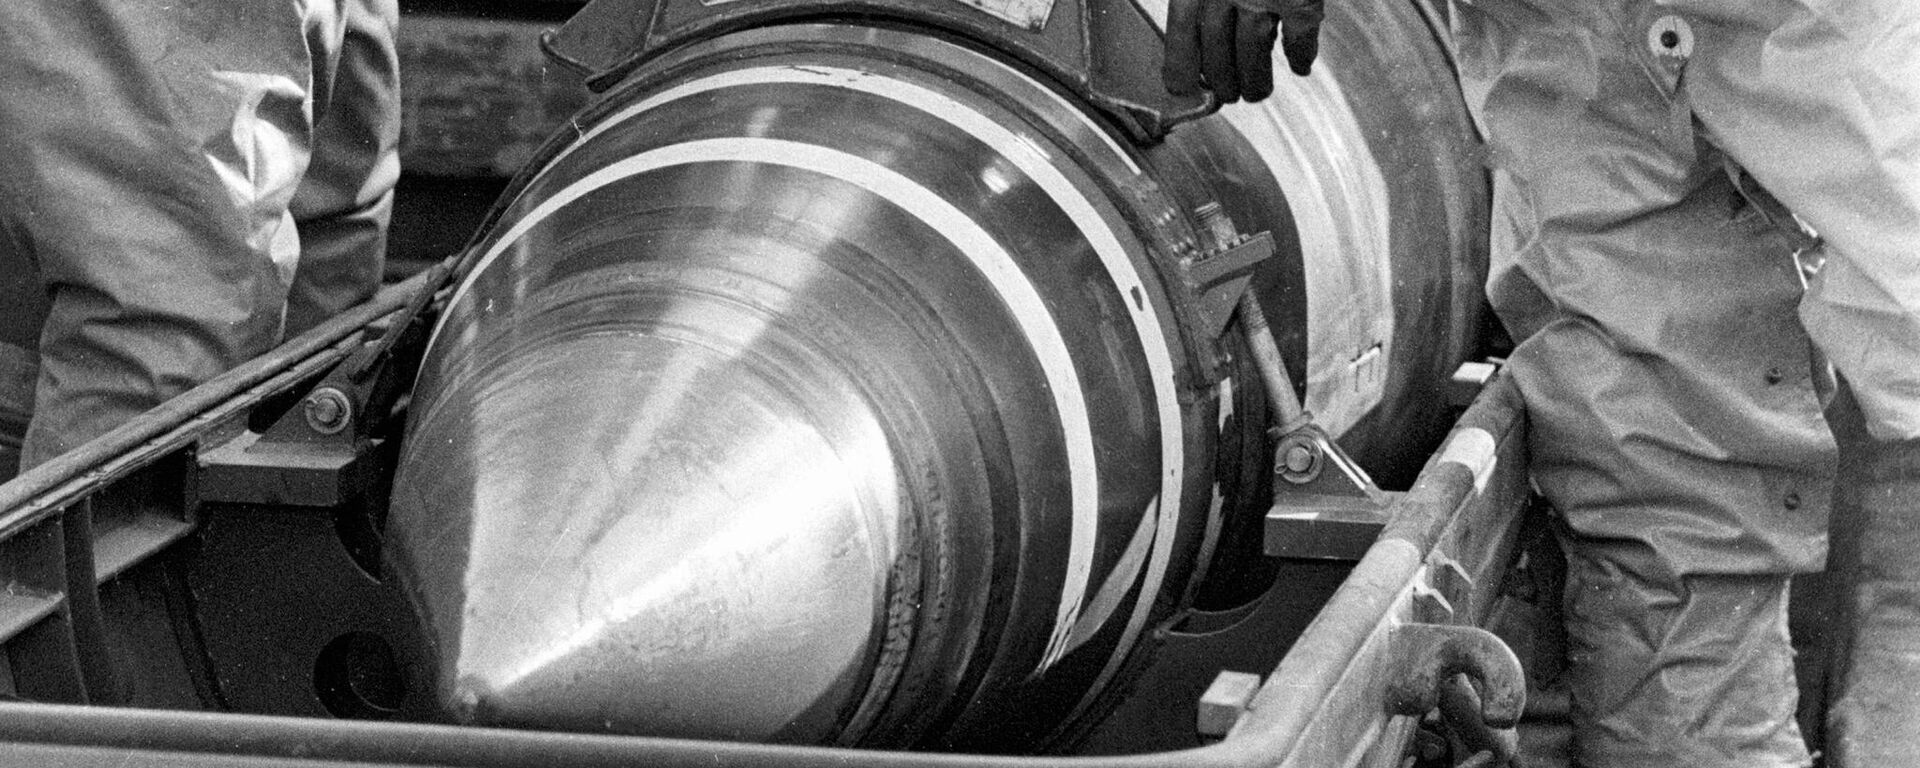 Los militares empaquetan cabezas nucleares en contenedores para trasladarlas desde Ucrania - Sputnik Mundo, 1920, 01.02.2023